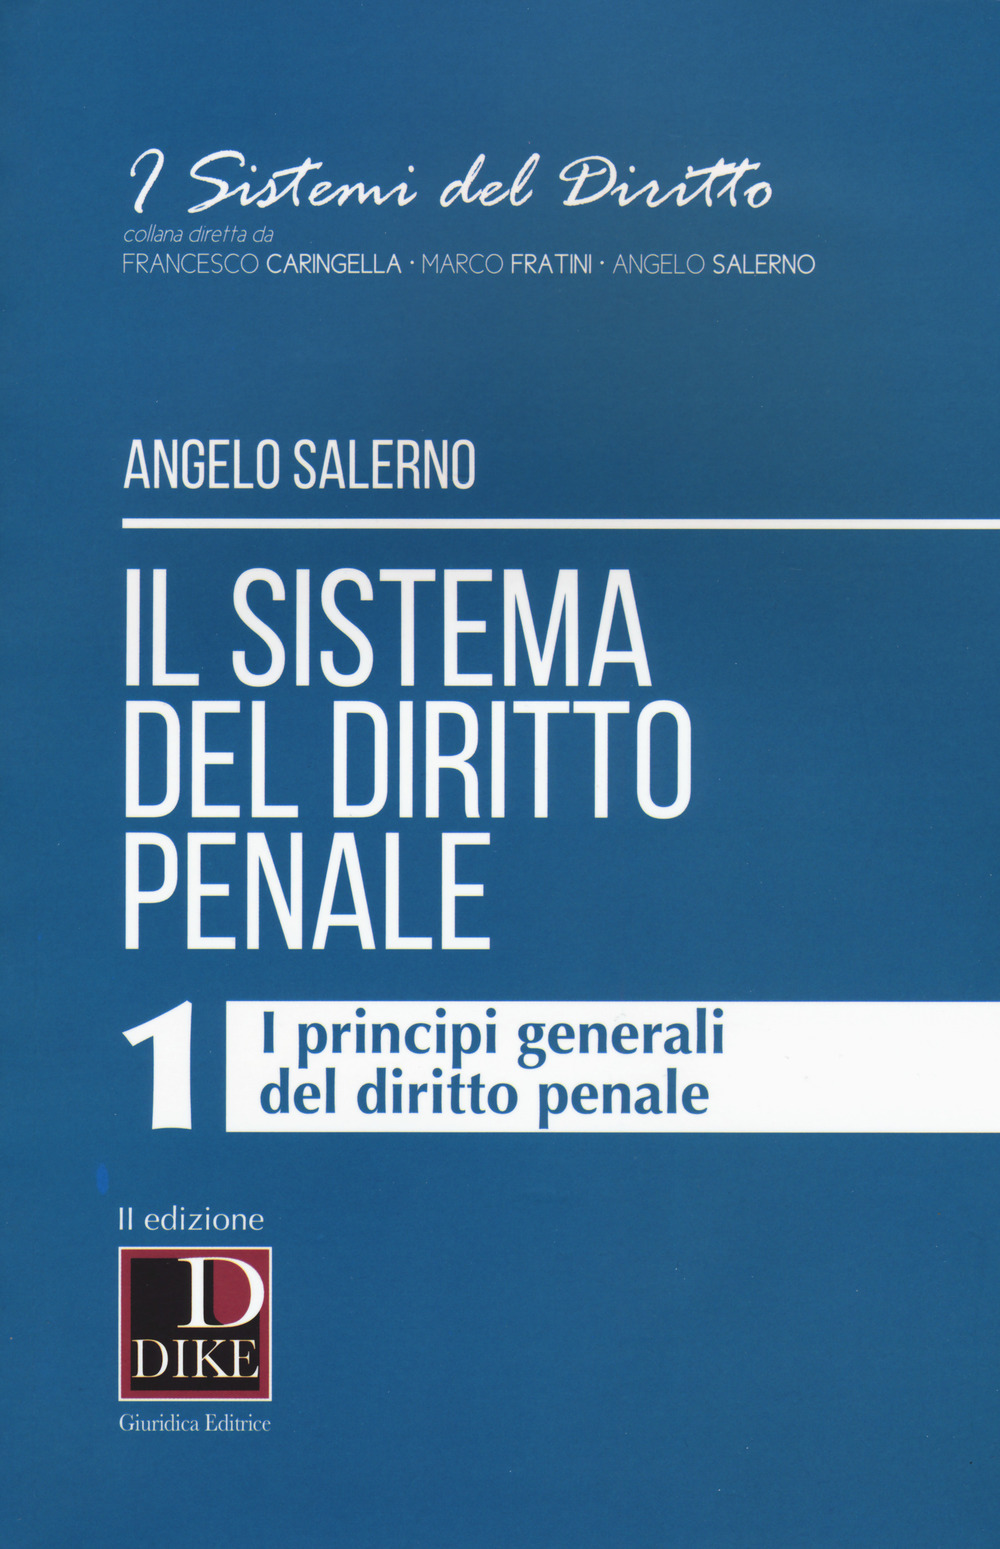 Image of Il sistema del diritto penale. Vol. 1: I principi generali del diritto penale.